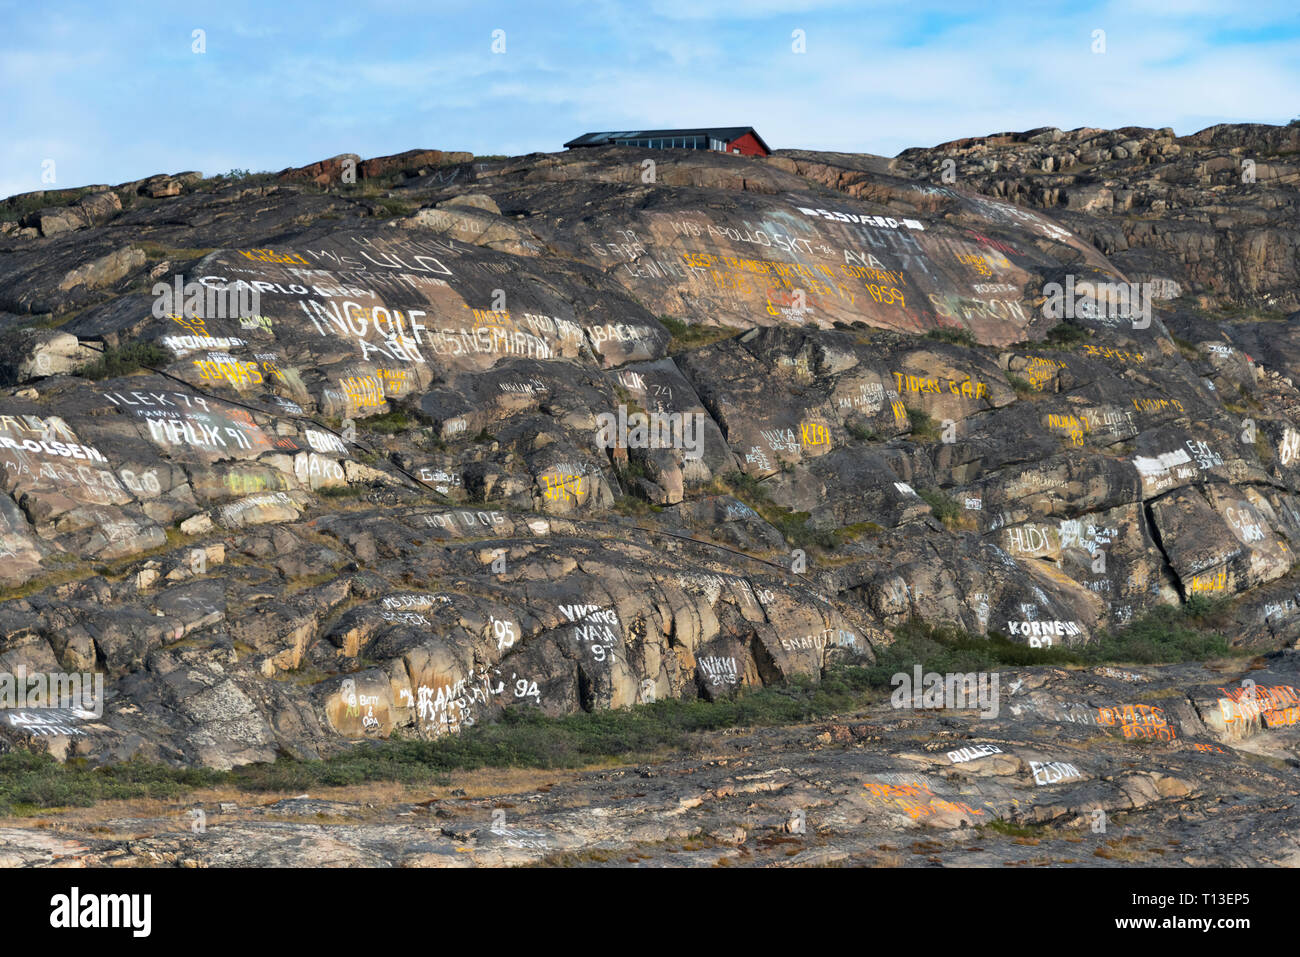 Des graffitis sur des rochers sur la plage, à Kangerlussuaq, Groenland Banque D'Images